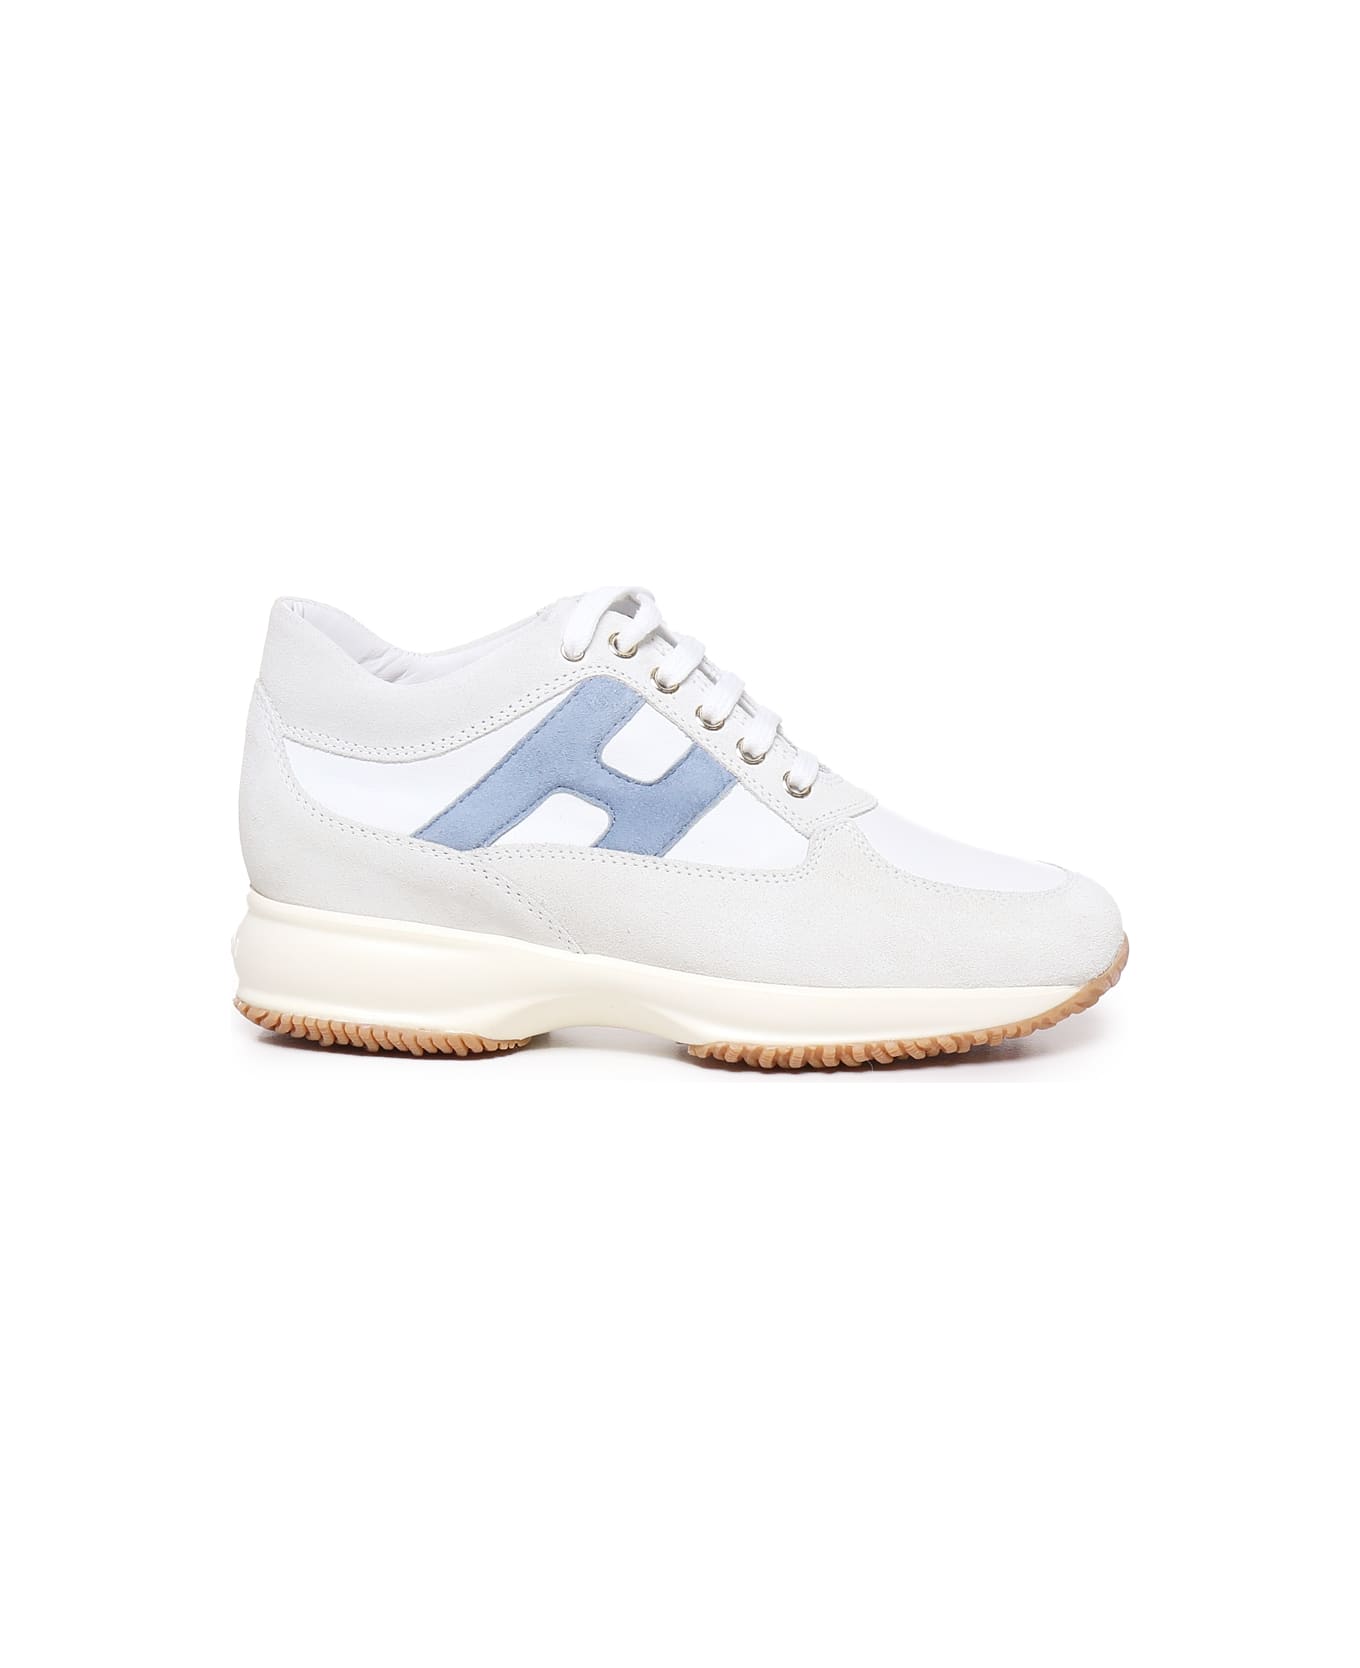 Hogan Sneakers - White, light blue